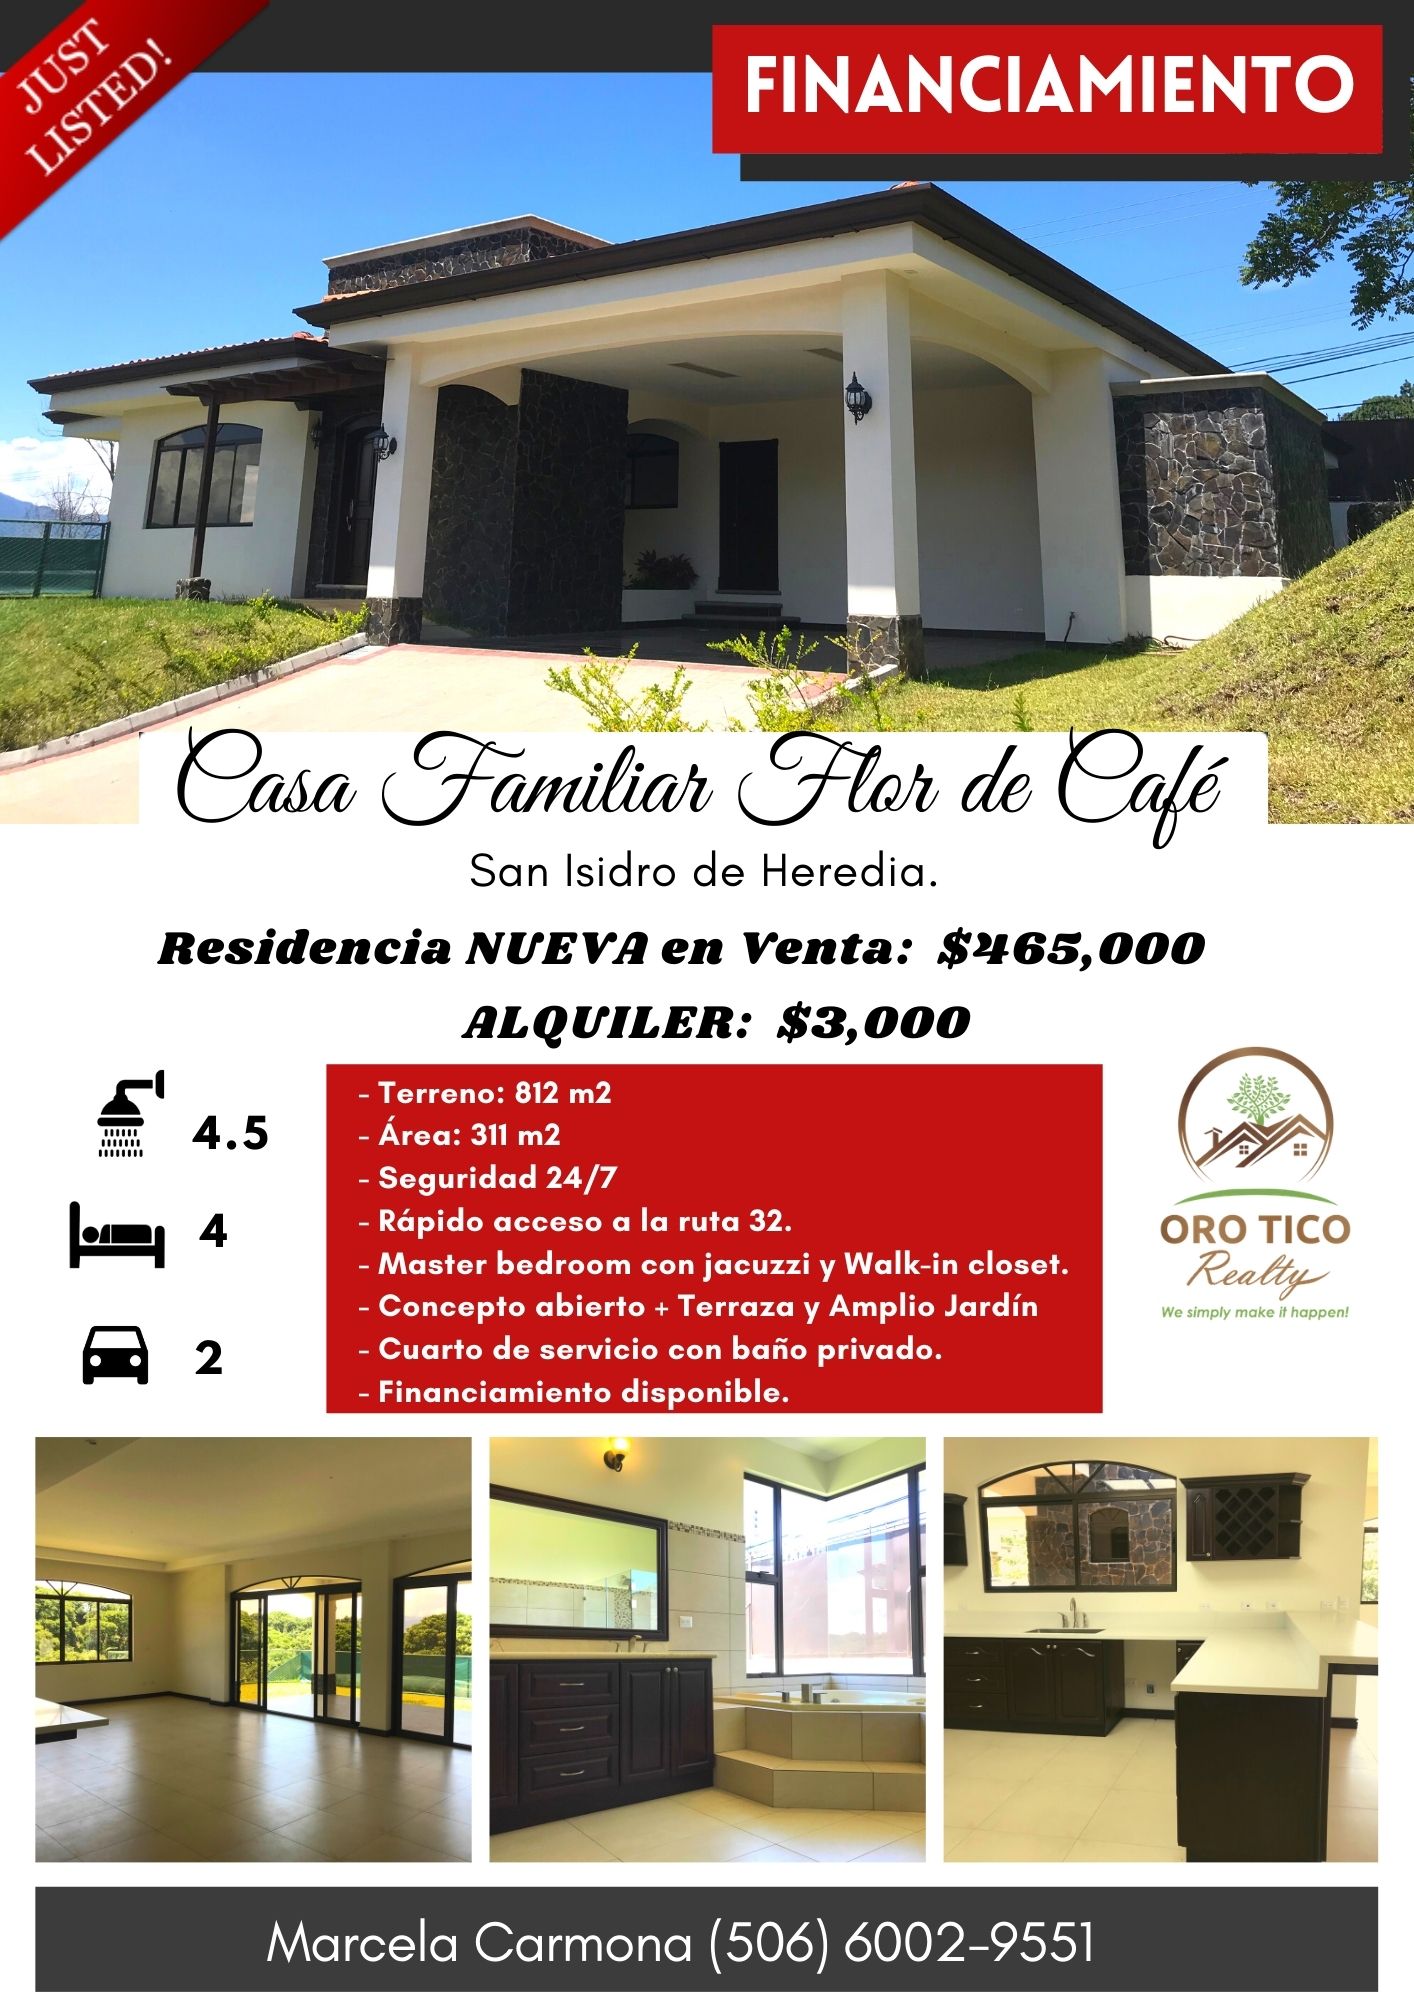 Casa-Brisas-En venta-for sale-san isidro-heredia-rent-oro tico realty (2)--e29eff20